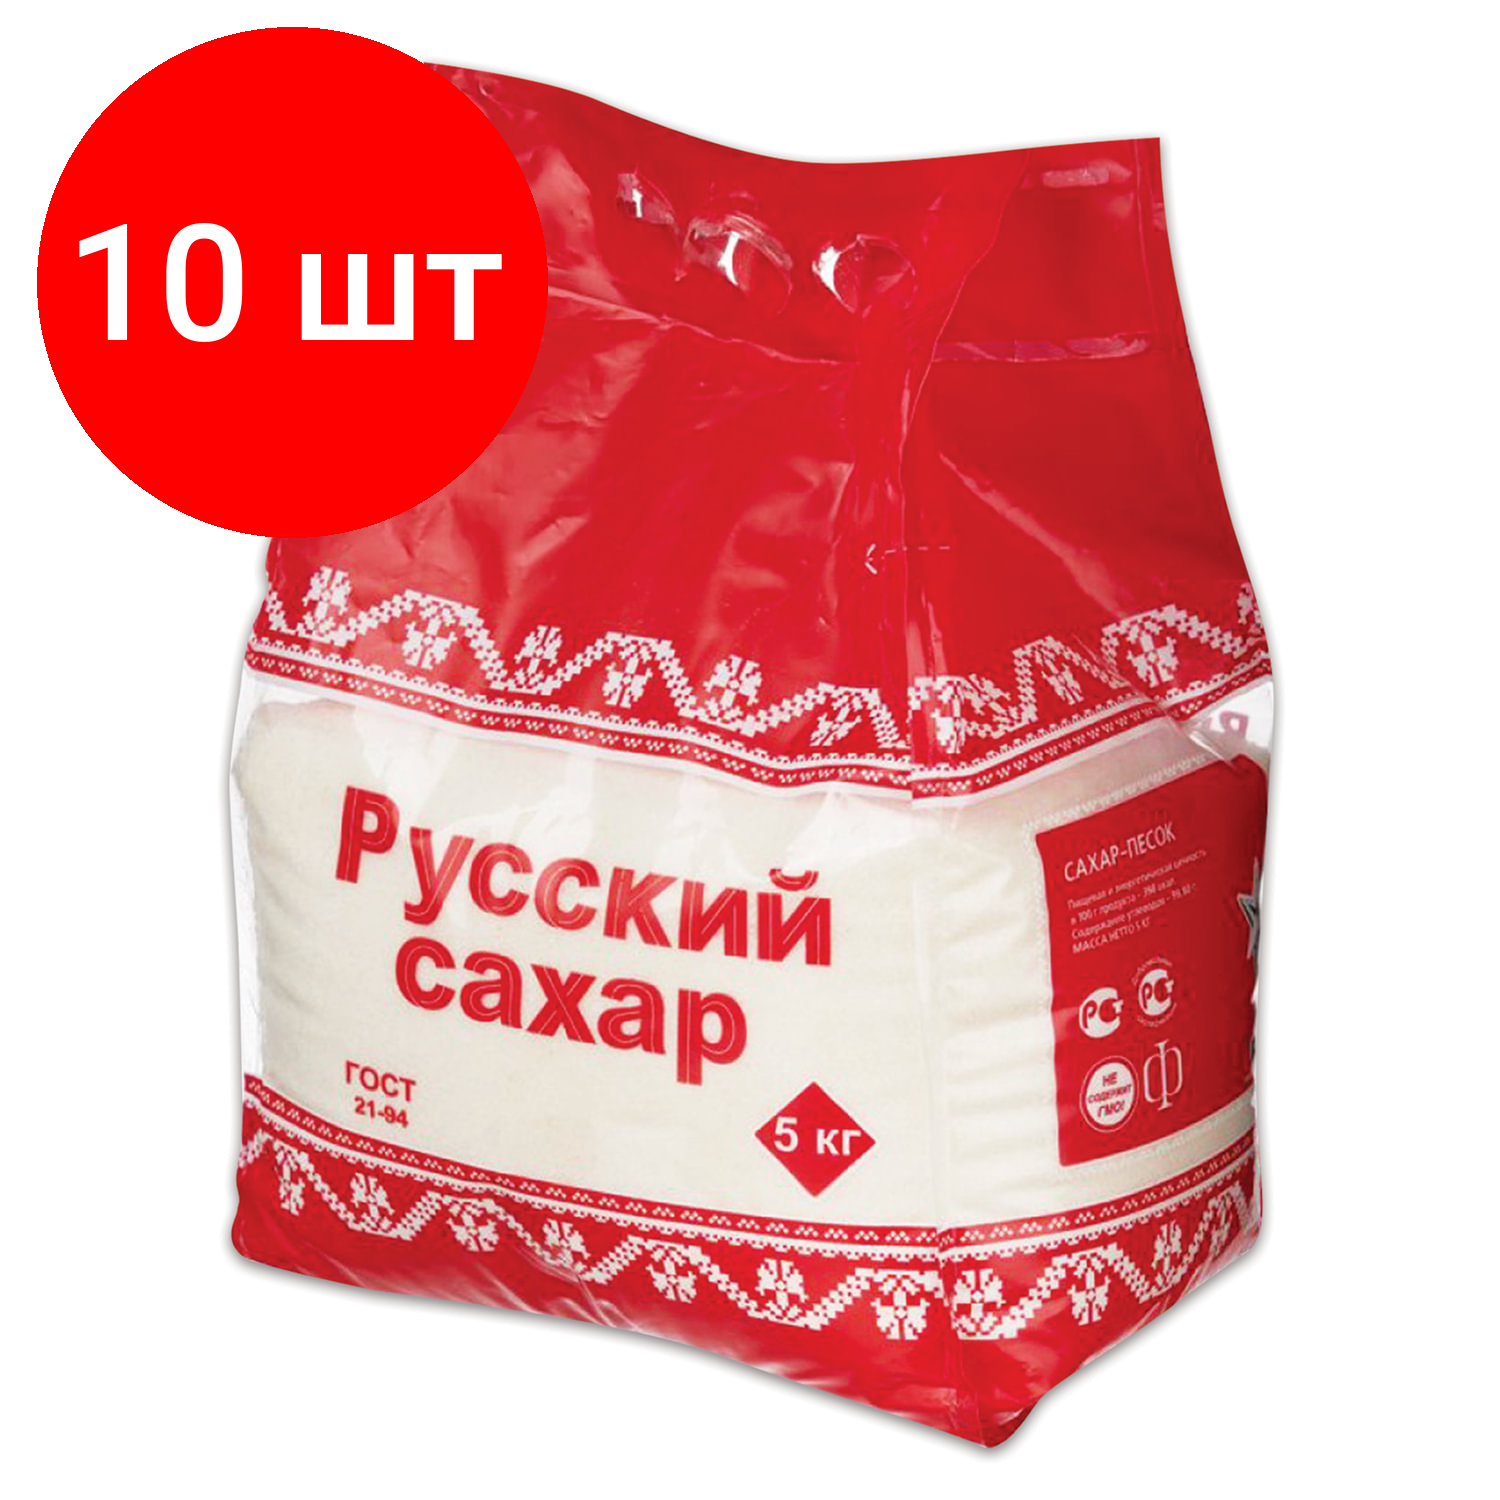 Комплект 10 шт, Сахар-песок "Русский", 5 кг, полиэтиленовая упаковка